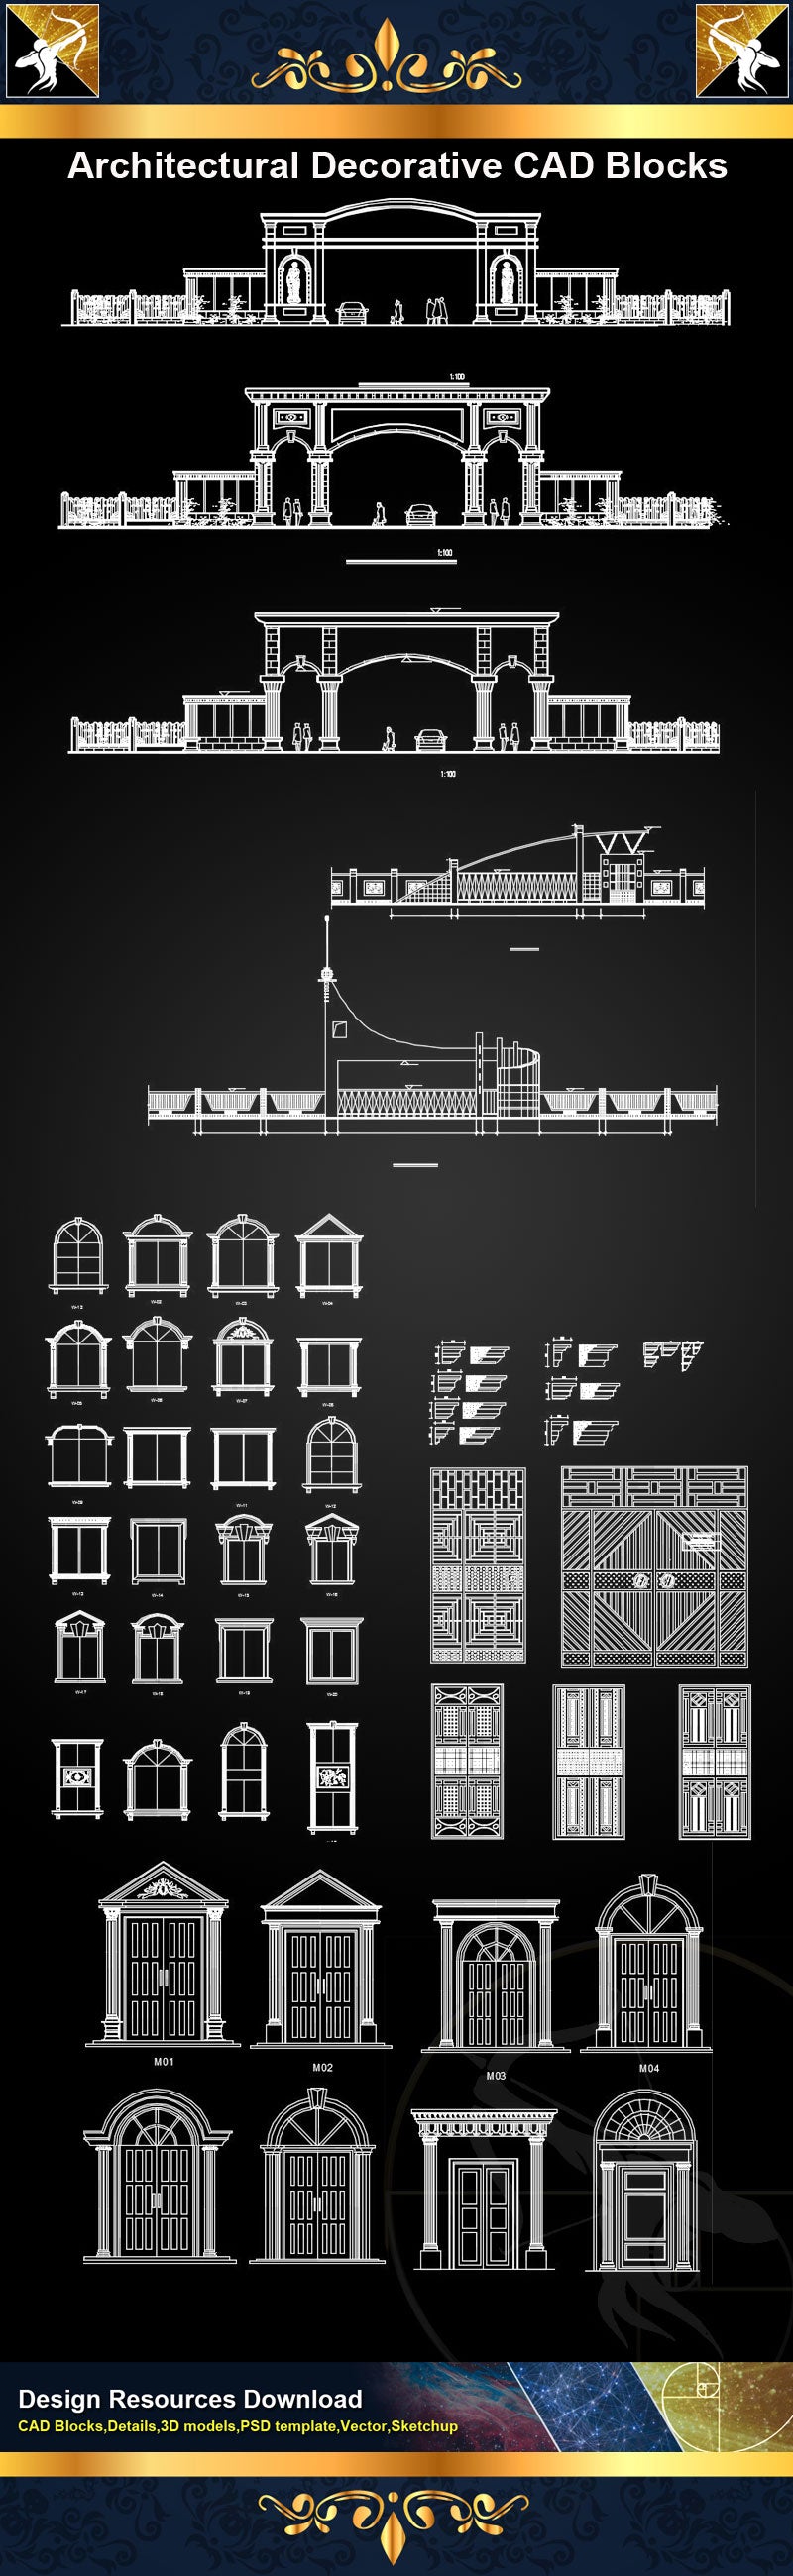 Architectural Decorative CAD Blocks Bundle